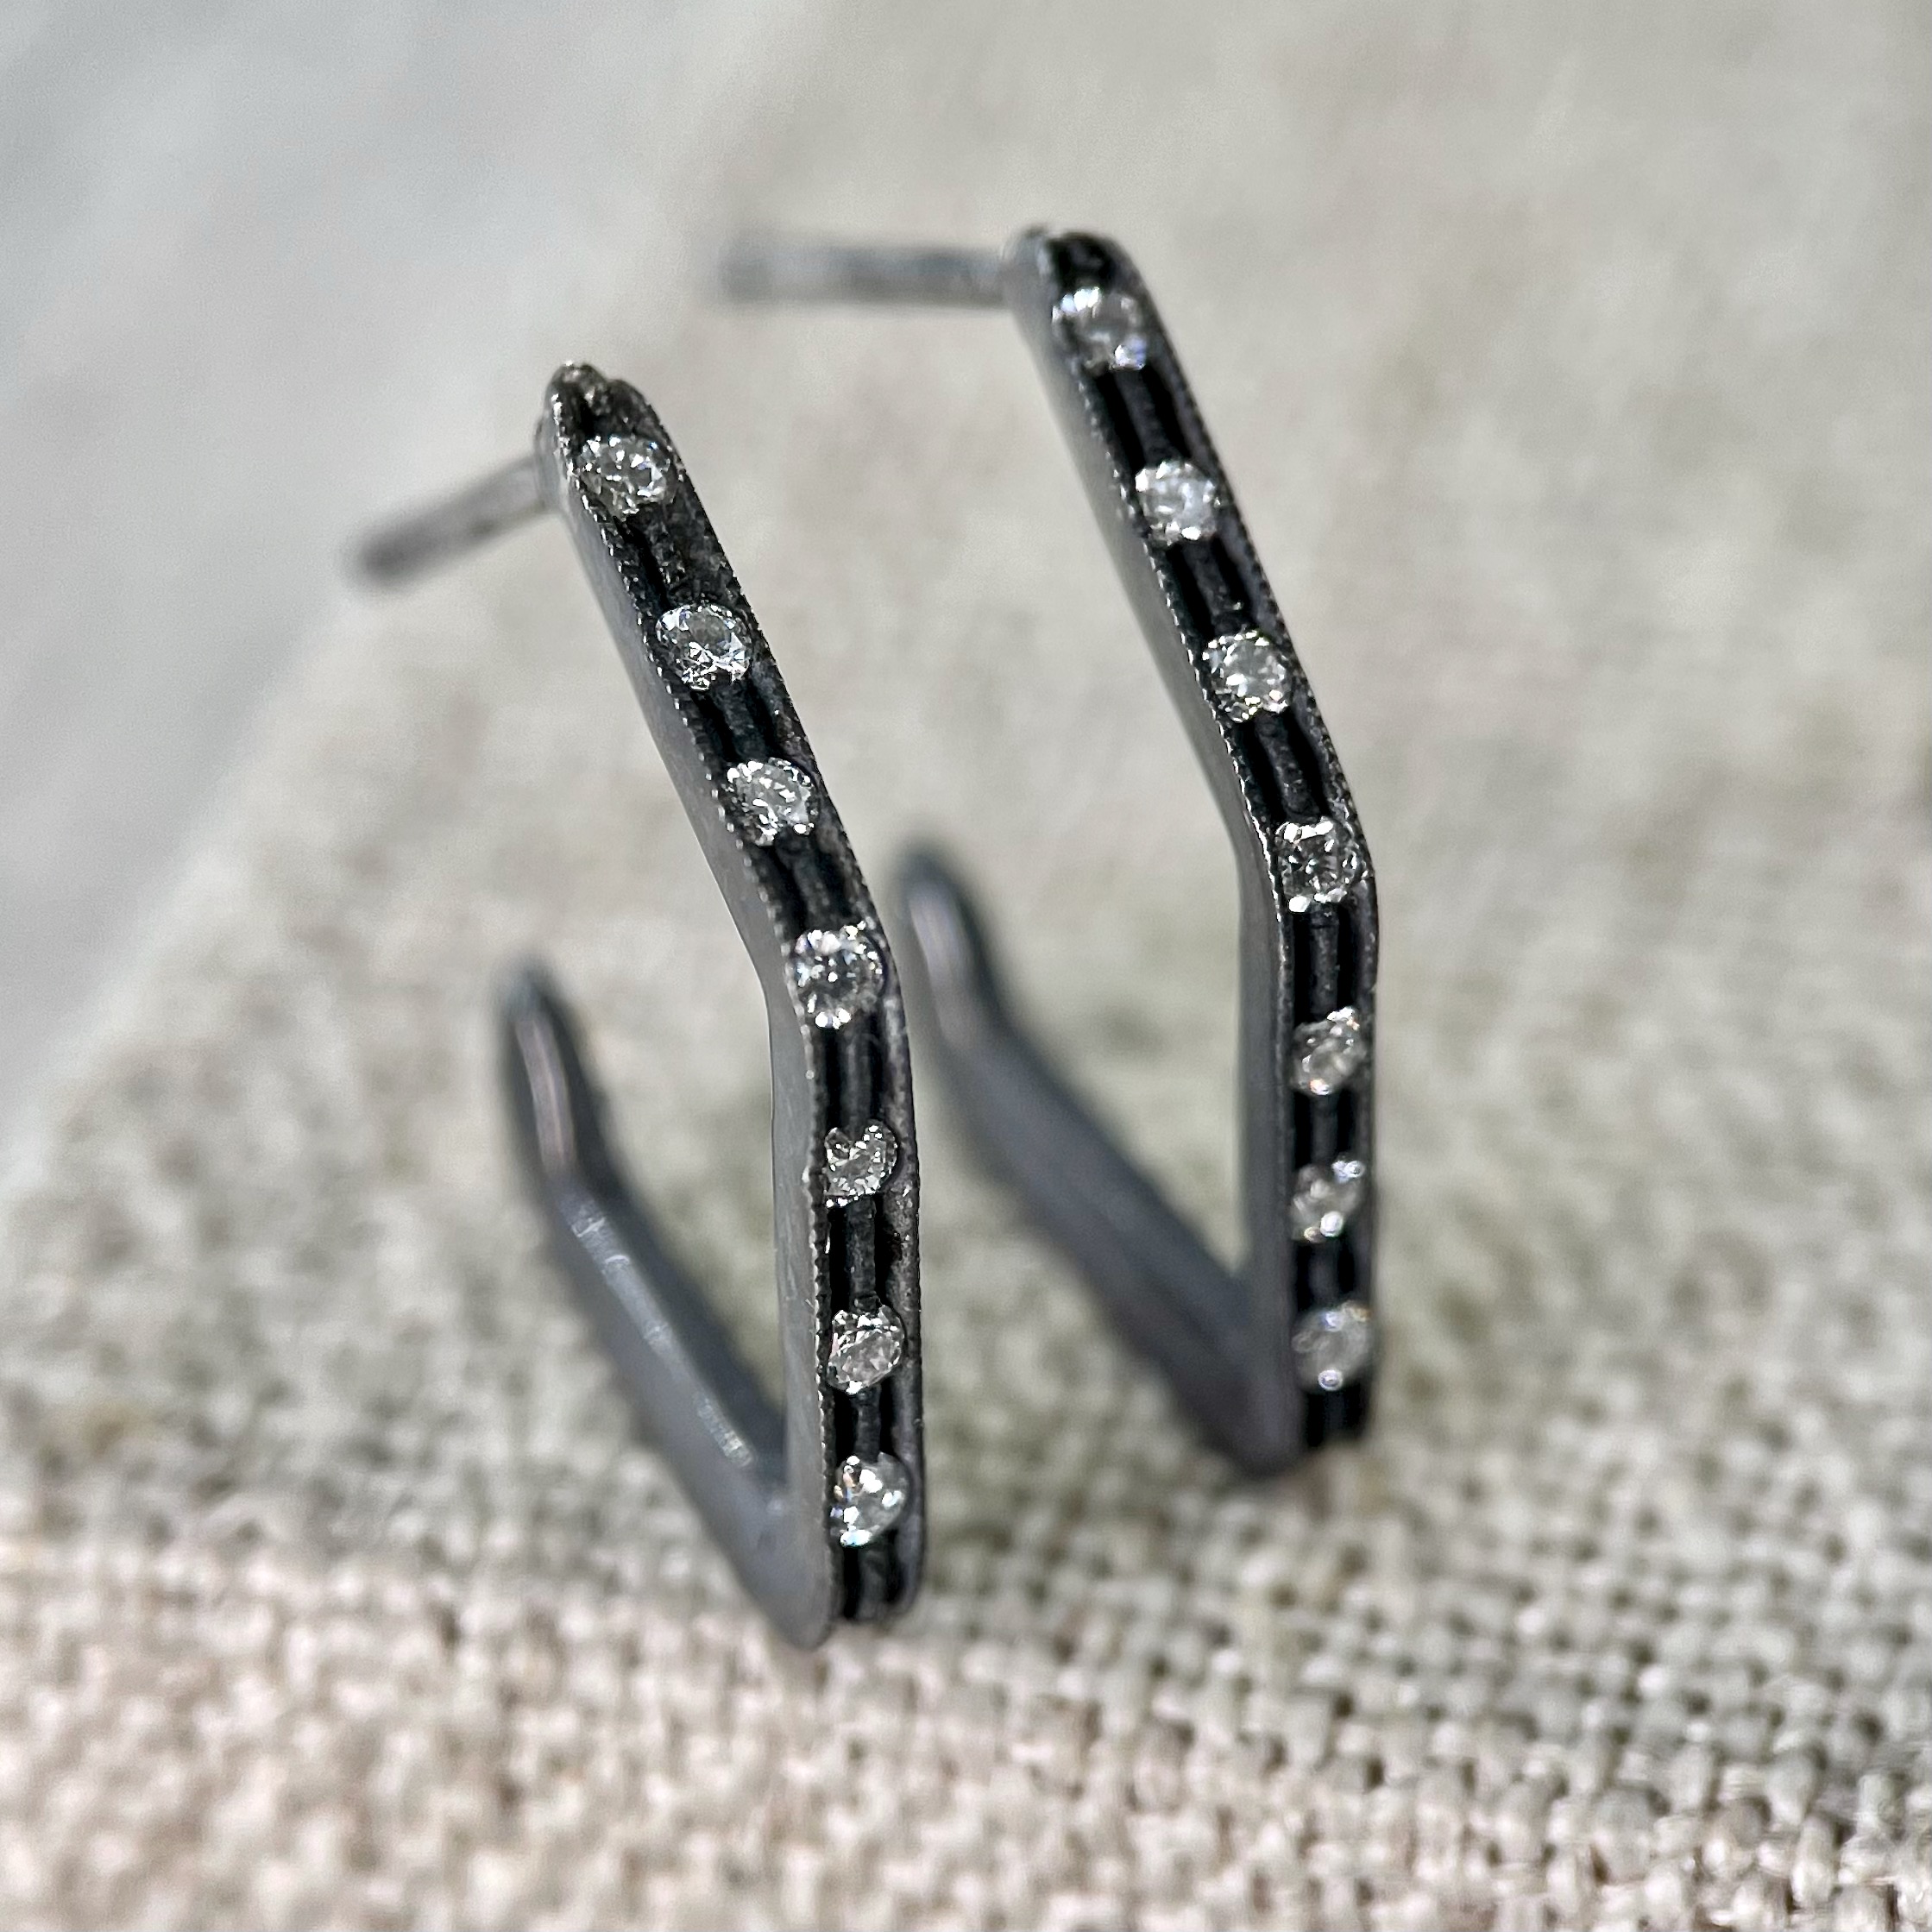 Blackened Silver Geometric Hoop Earrings with Diamonds - Sholdt 